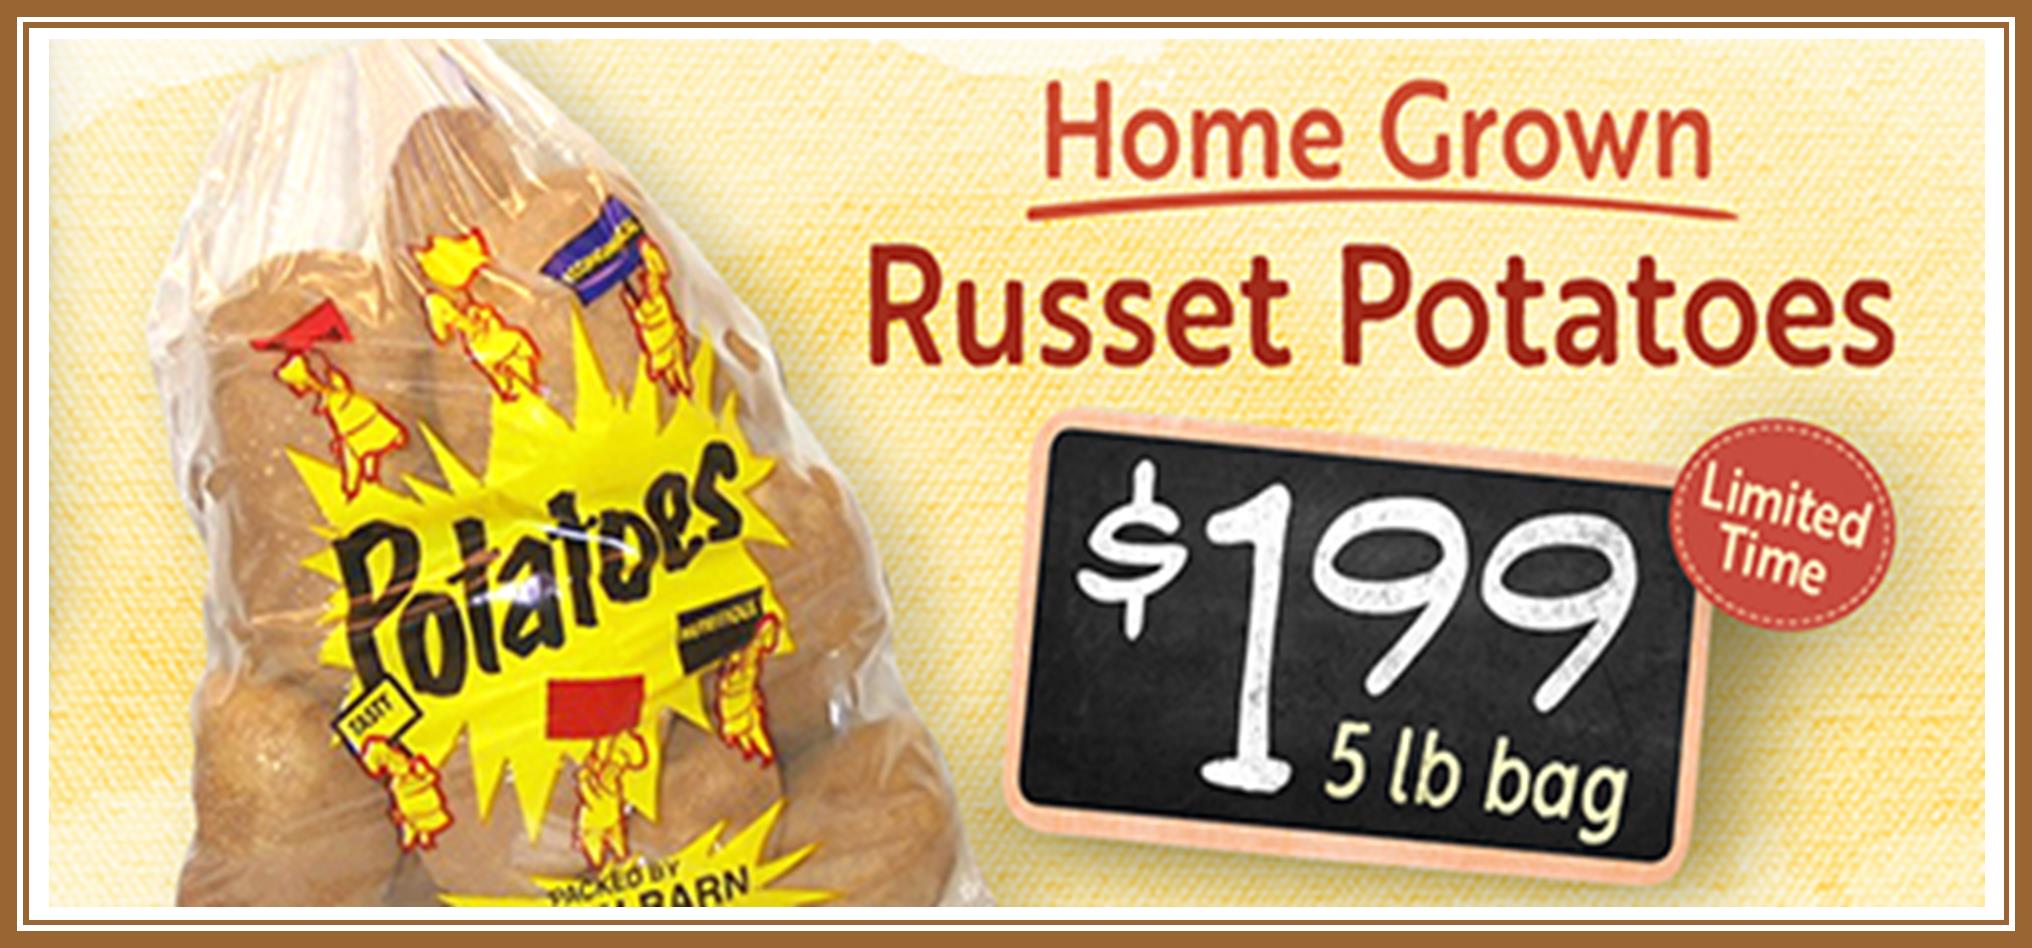 Potatoes Russett HG 199.jpg